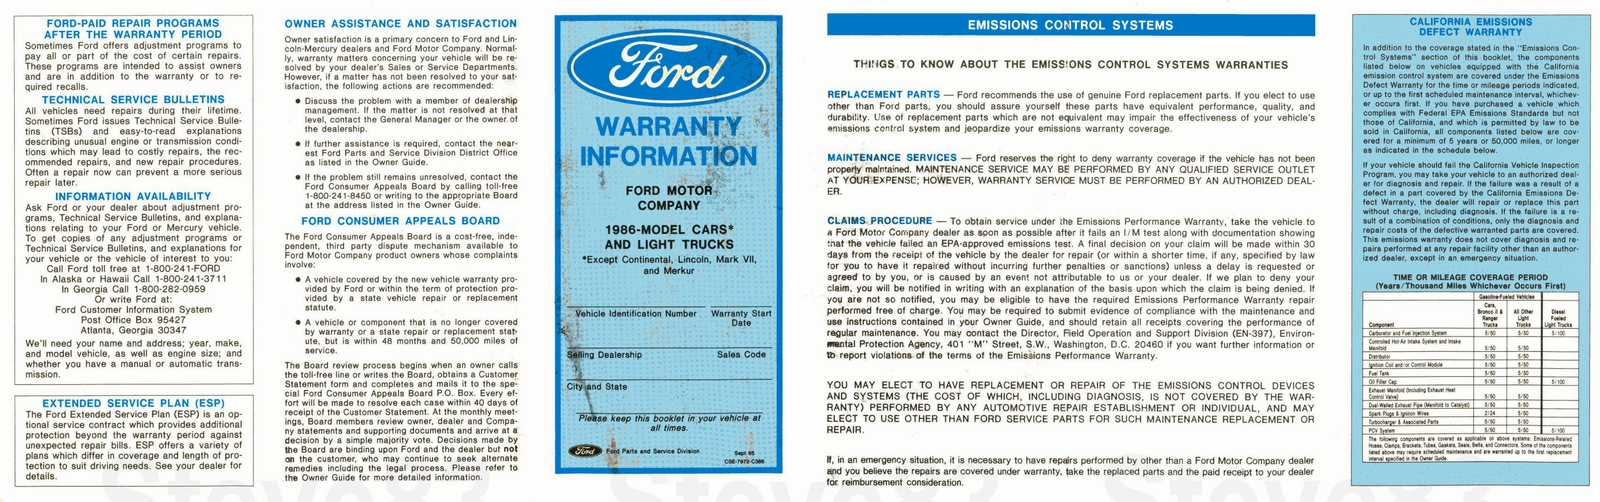 n_1986 Ford Light Truck Warranty Guide-01.jpg